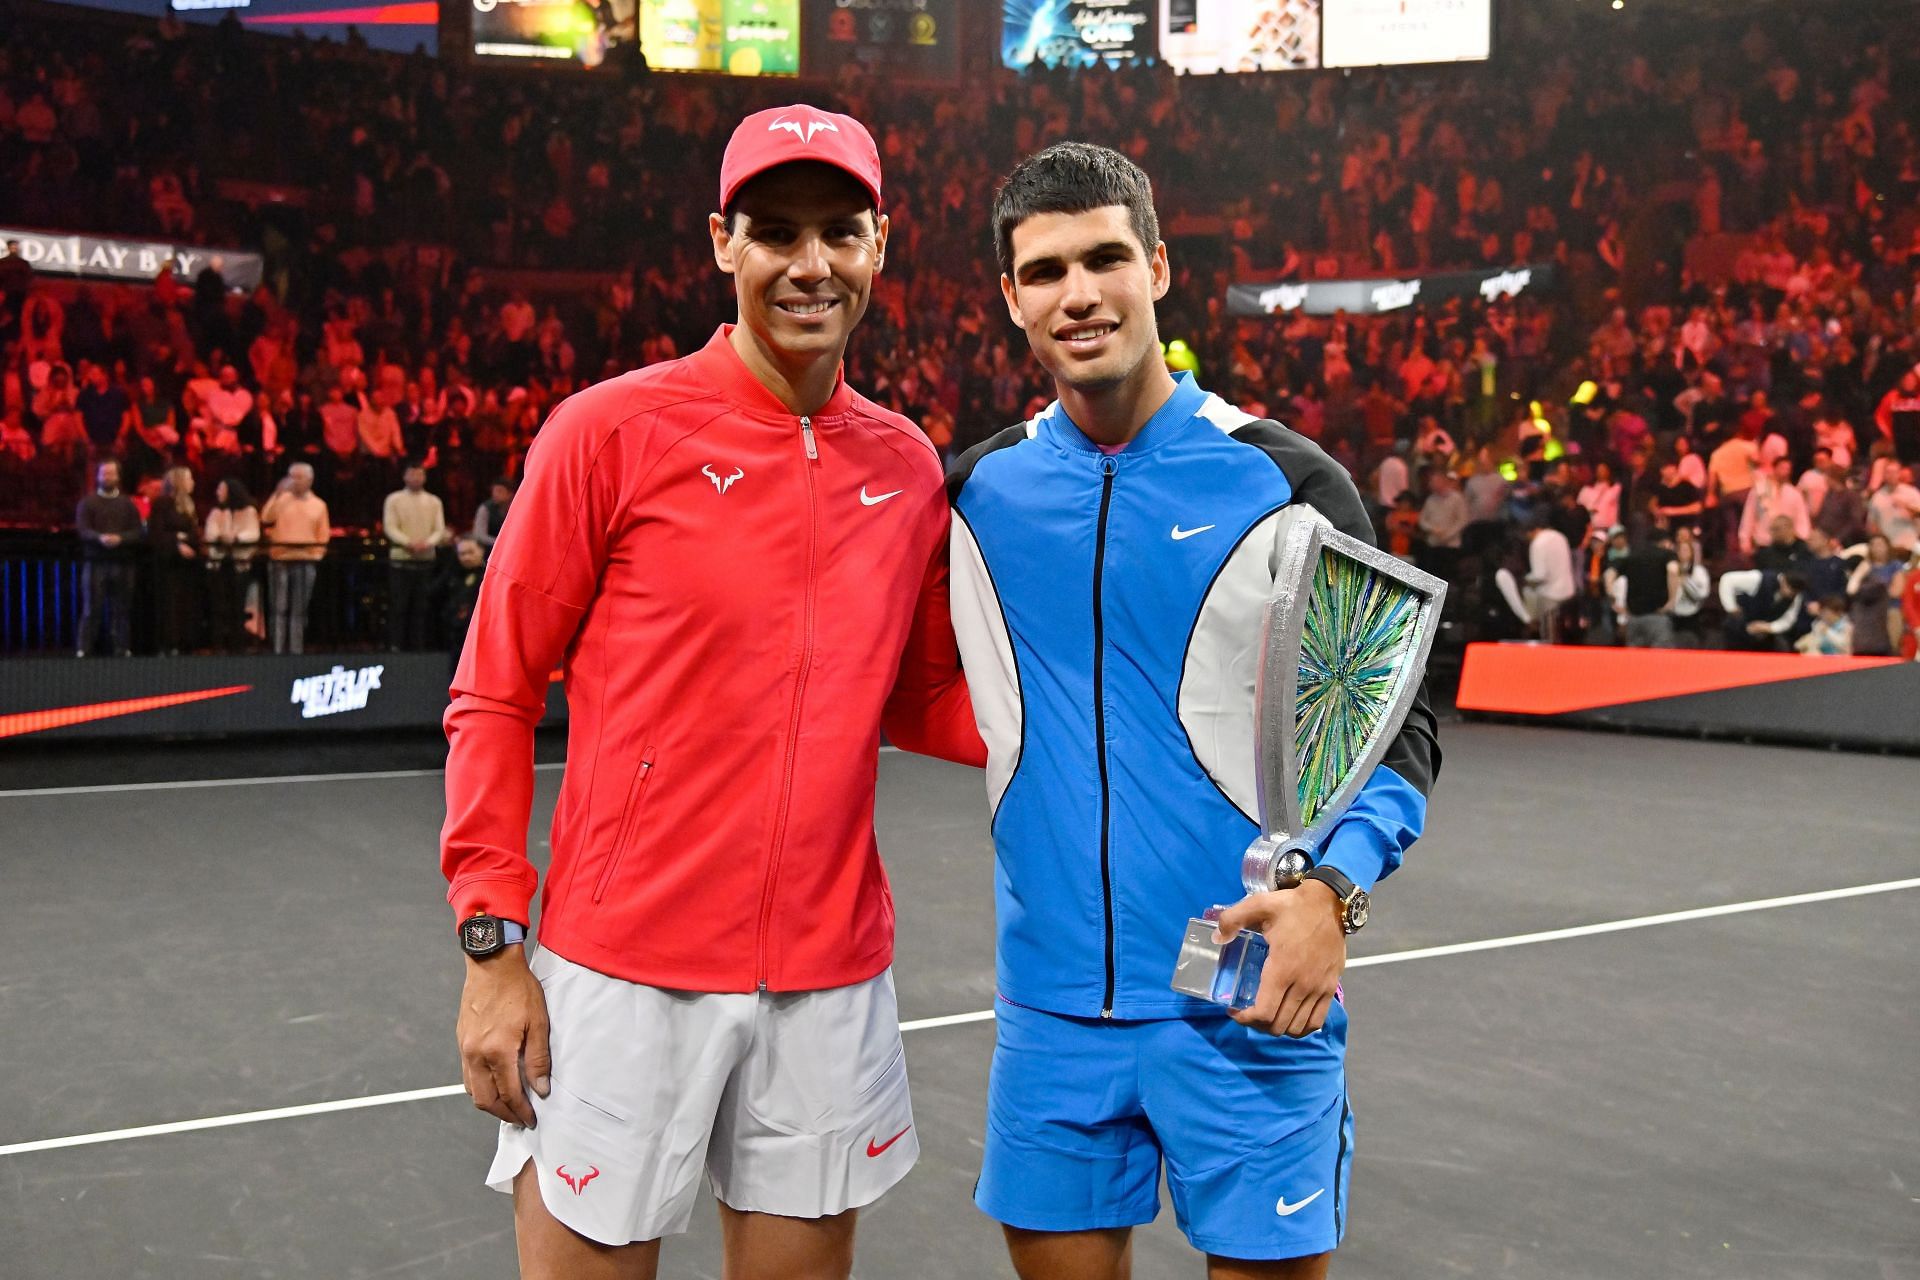 Rafael Nadal (L) and Carlos Alcaraz (R) at The Netflix Slam